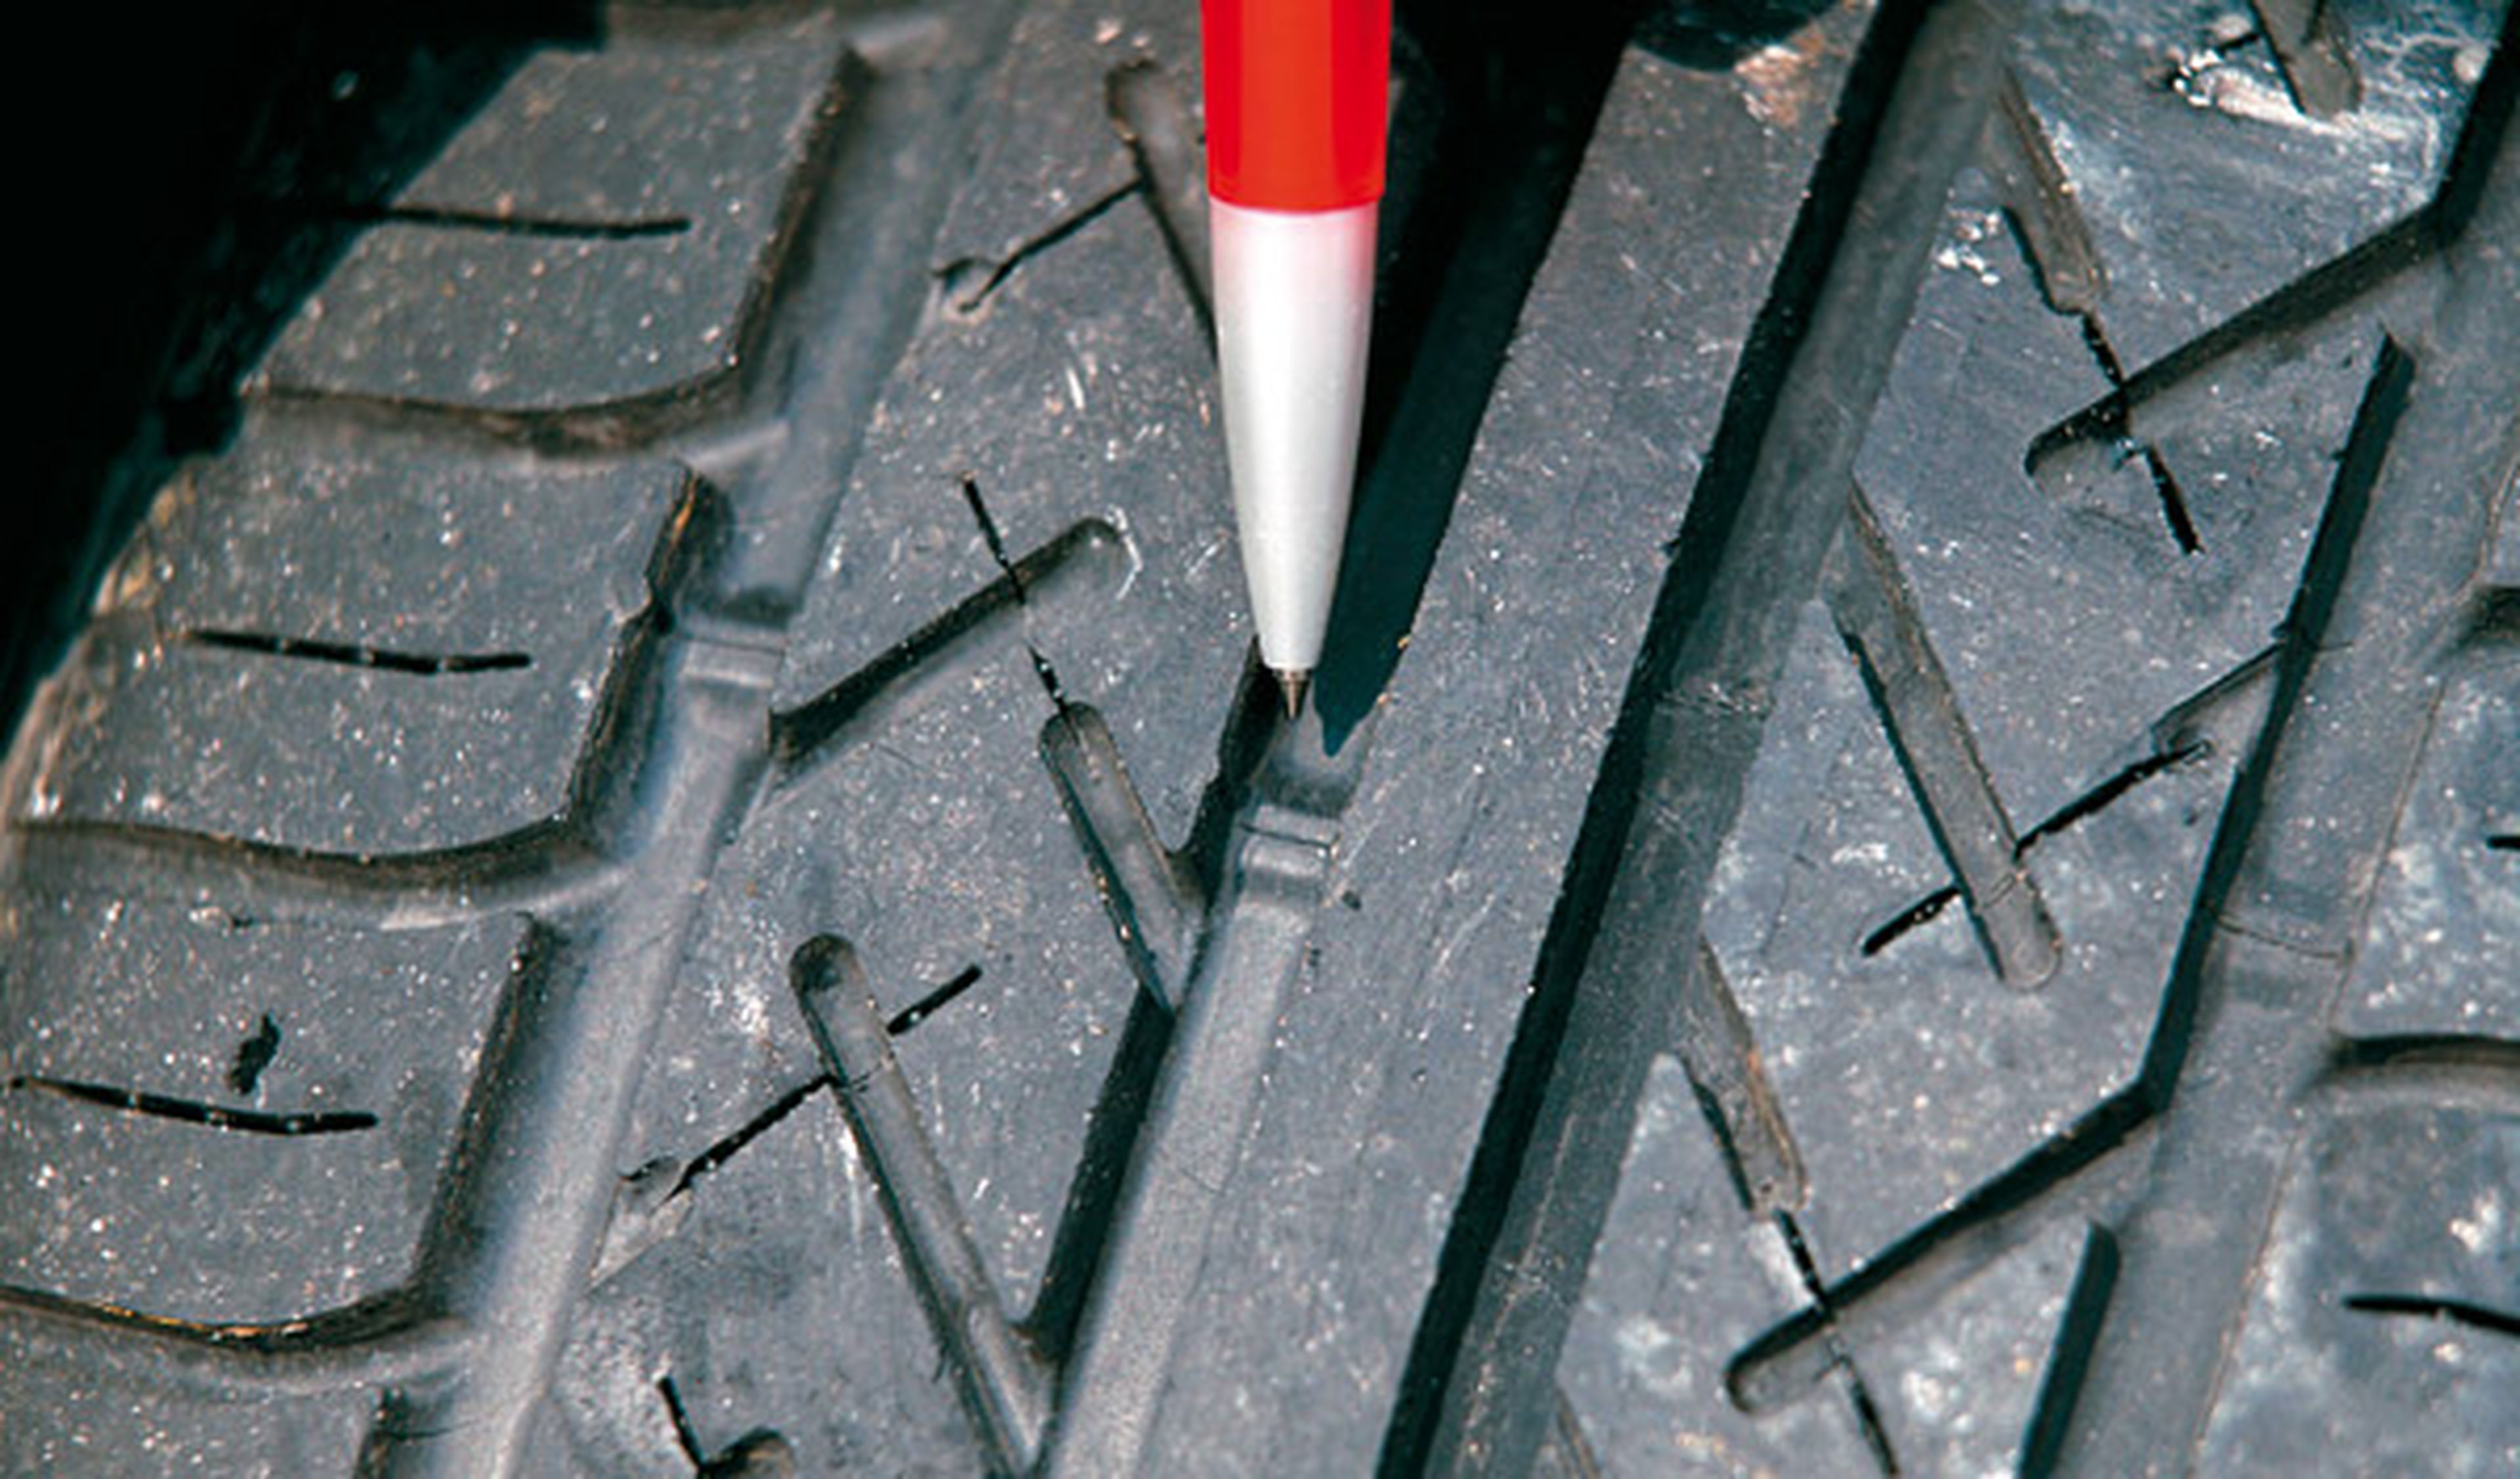 1,6 mm es el desgaste máximo permitido de las ranuras de los neumáticos